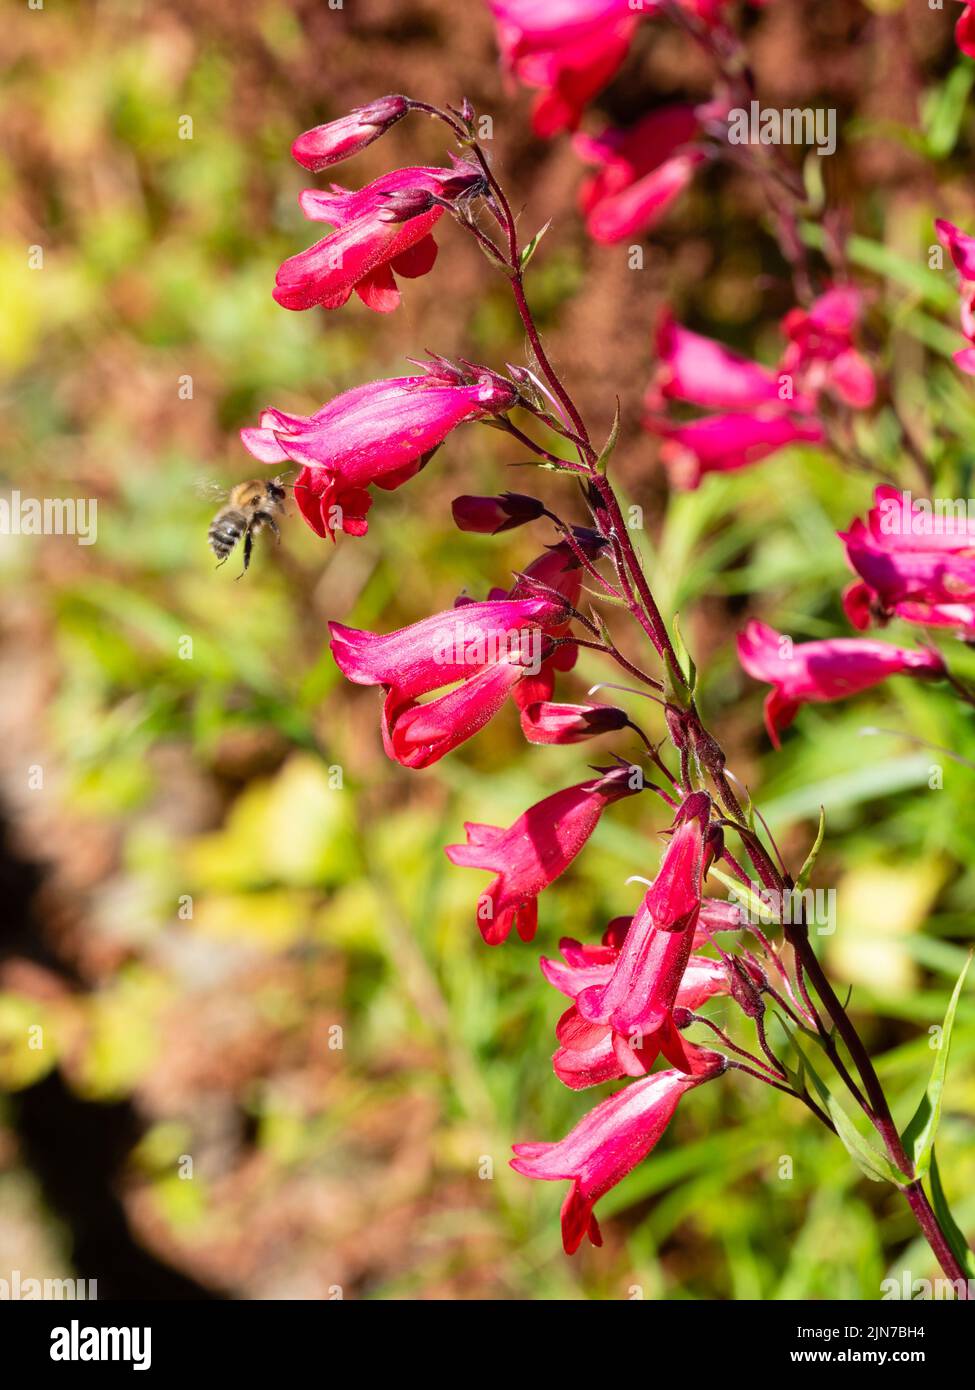 Rosa tubular, insecto que atrae flores del subarbusto perenne resistente, Penstemon 'Firebird' Foto de stock